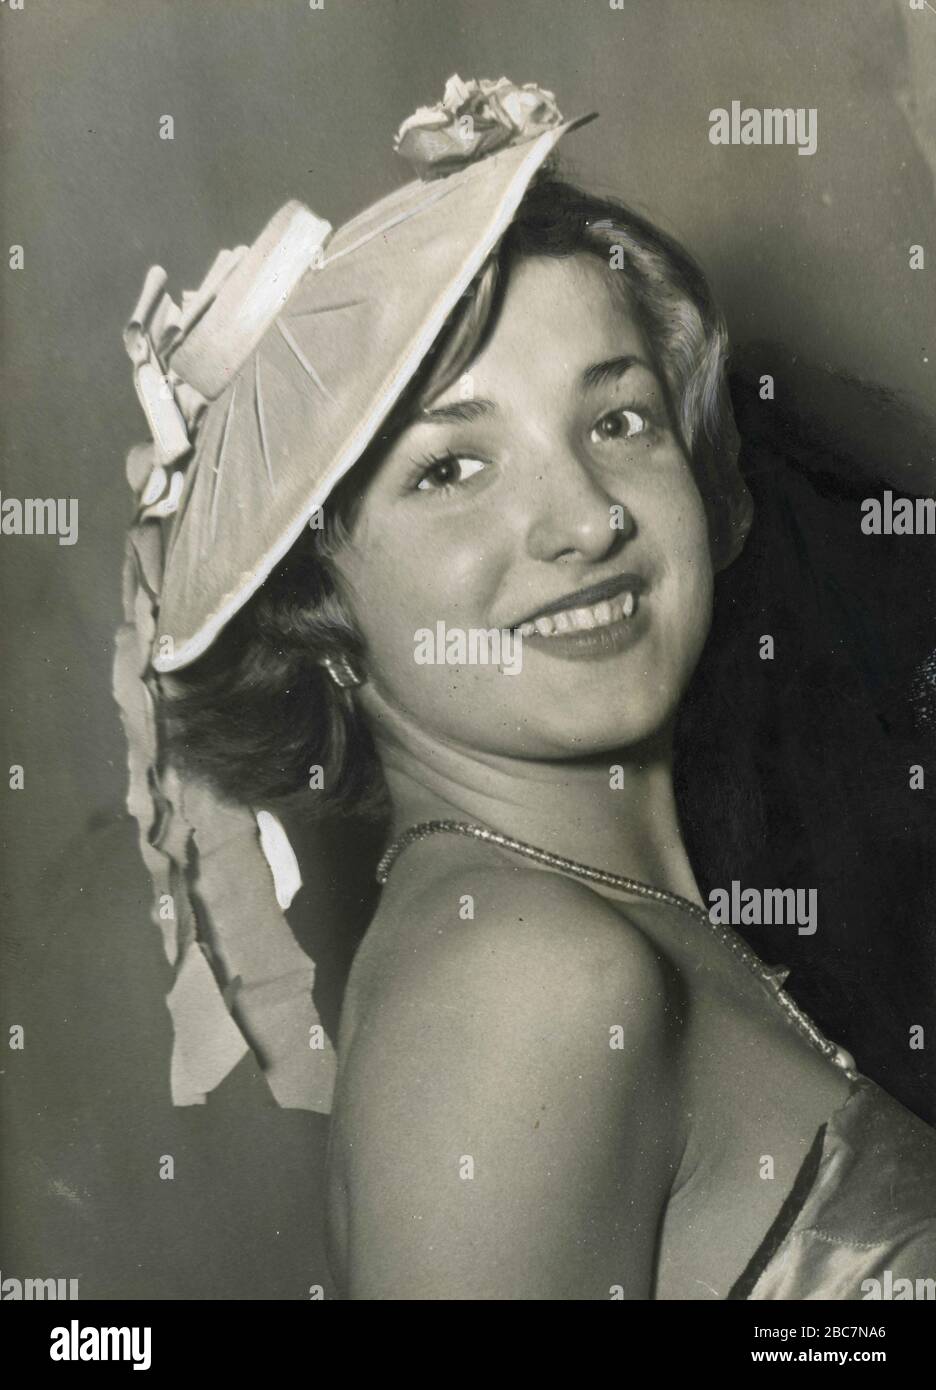 La française Lucette Bodin, gagnante du titre Miss Paris-Côte d'Azur, Paris, France 1949 Banque D'Images